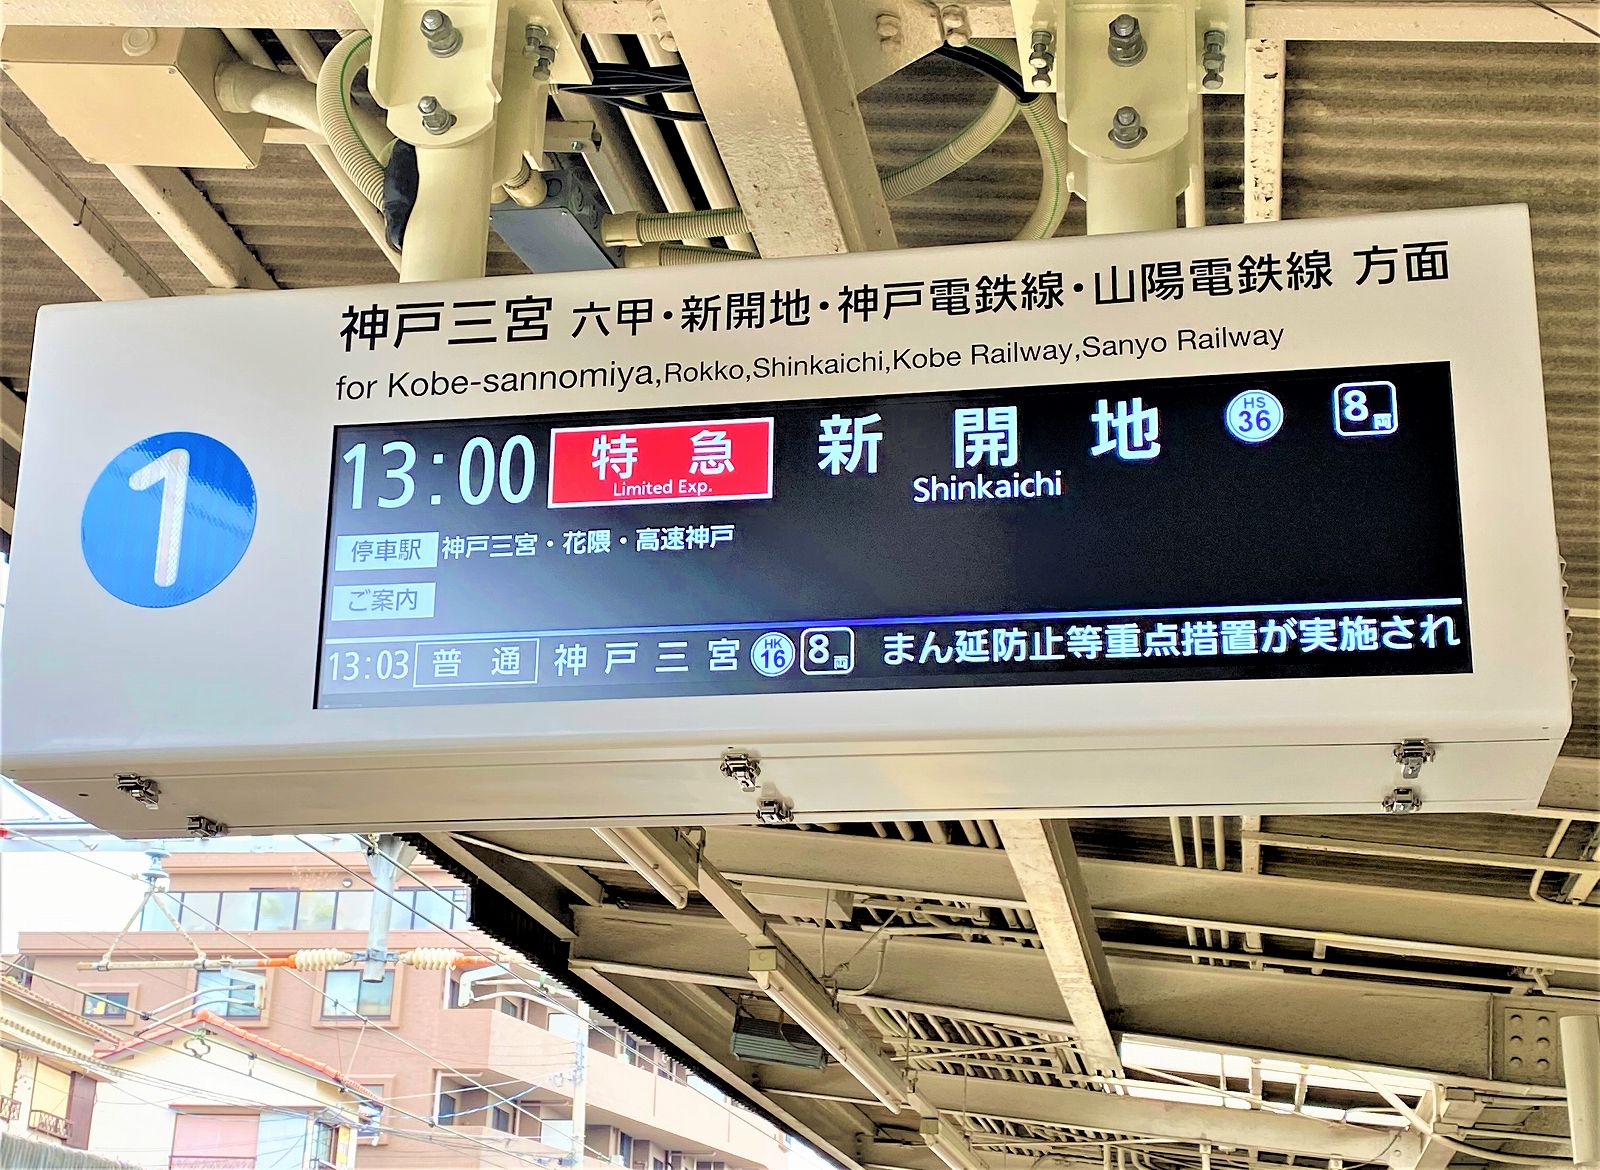 阪急電鉄 駅 発車順序表示器（行先表示器） ソラリー パタパタ 